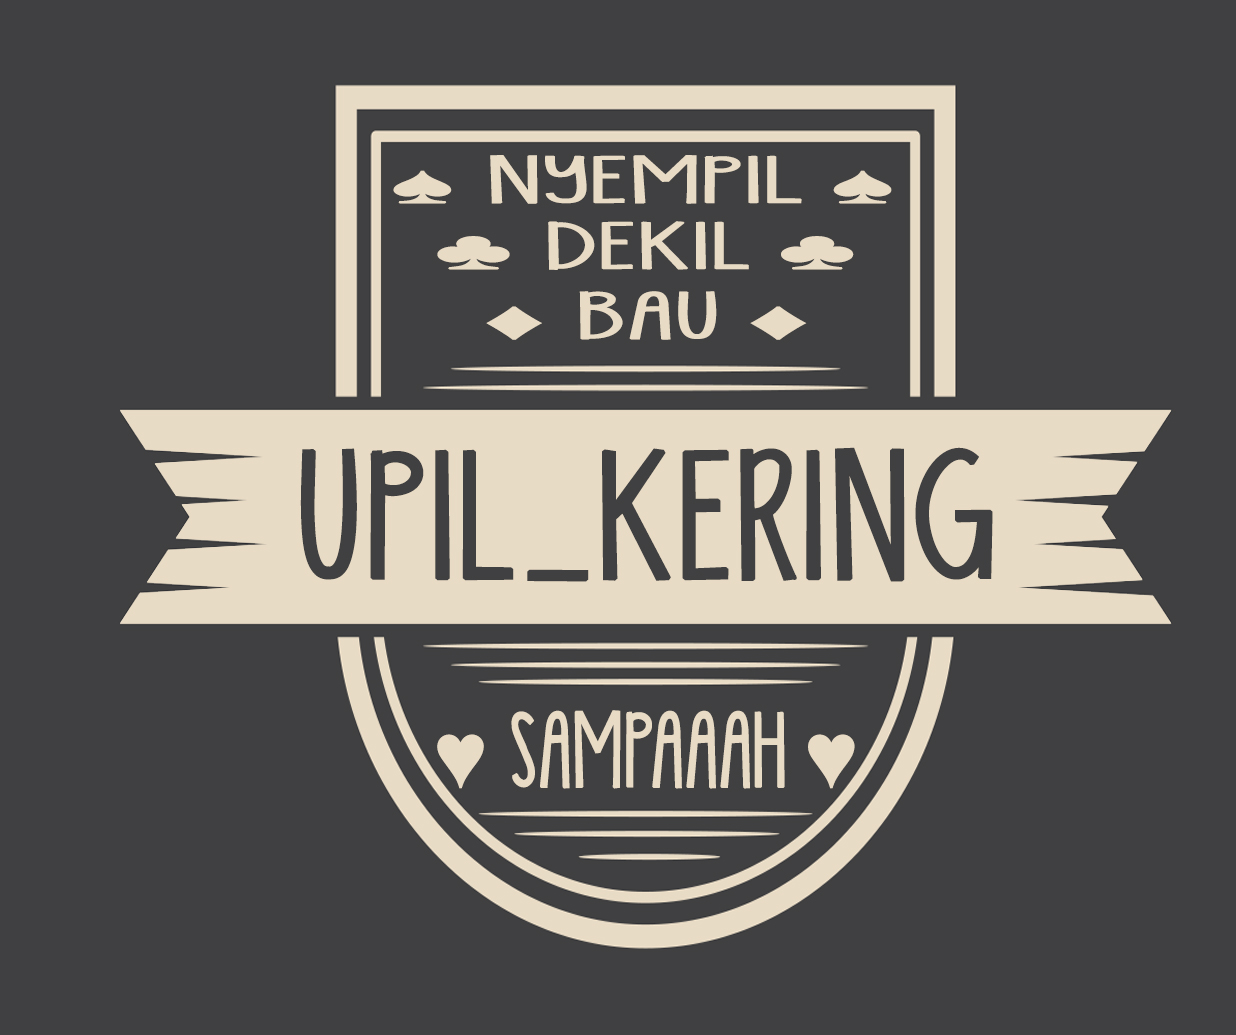 Upil_Kering